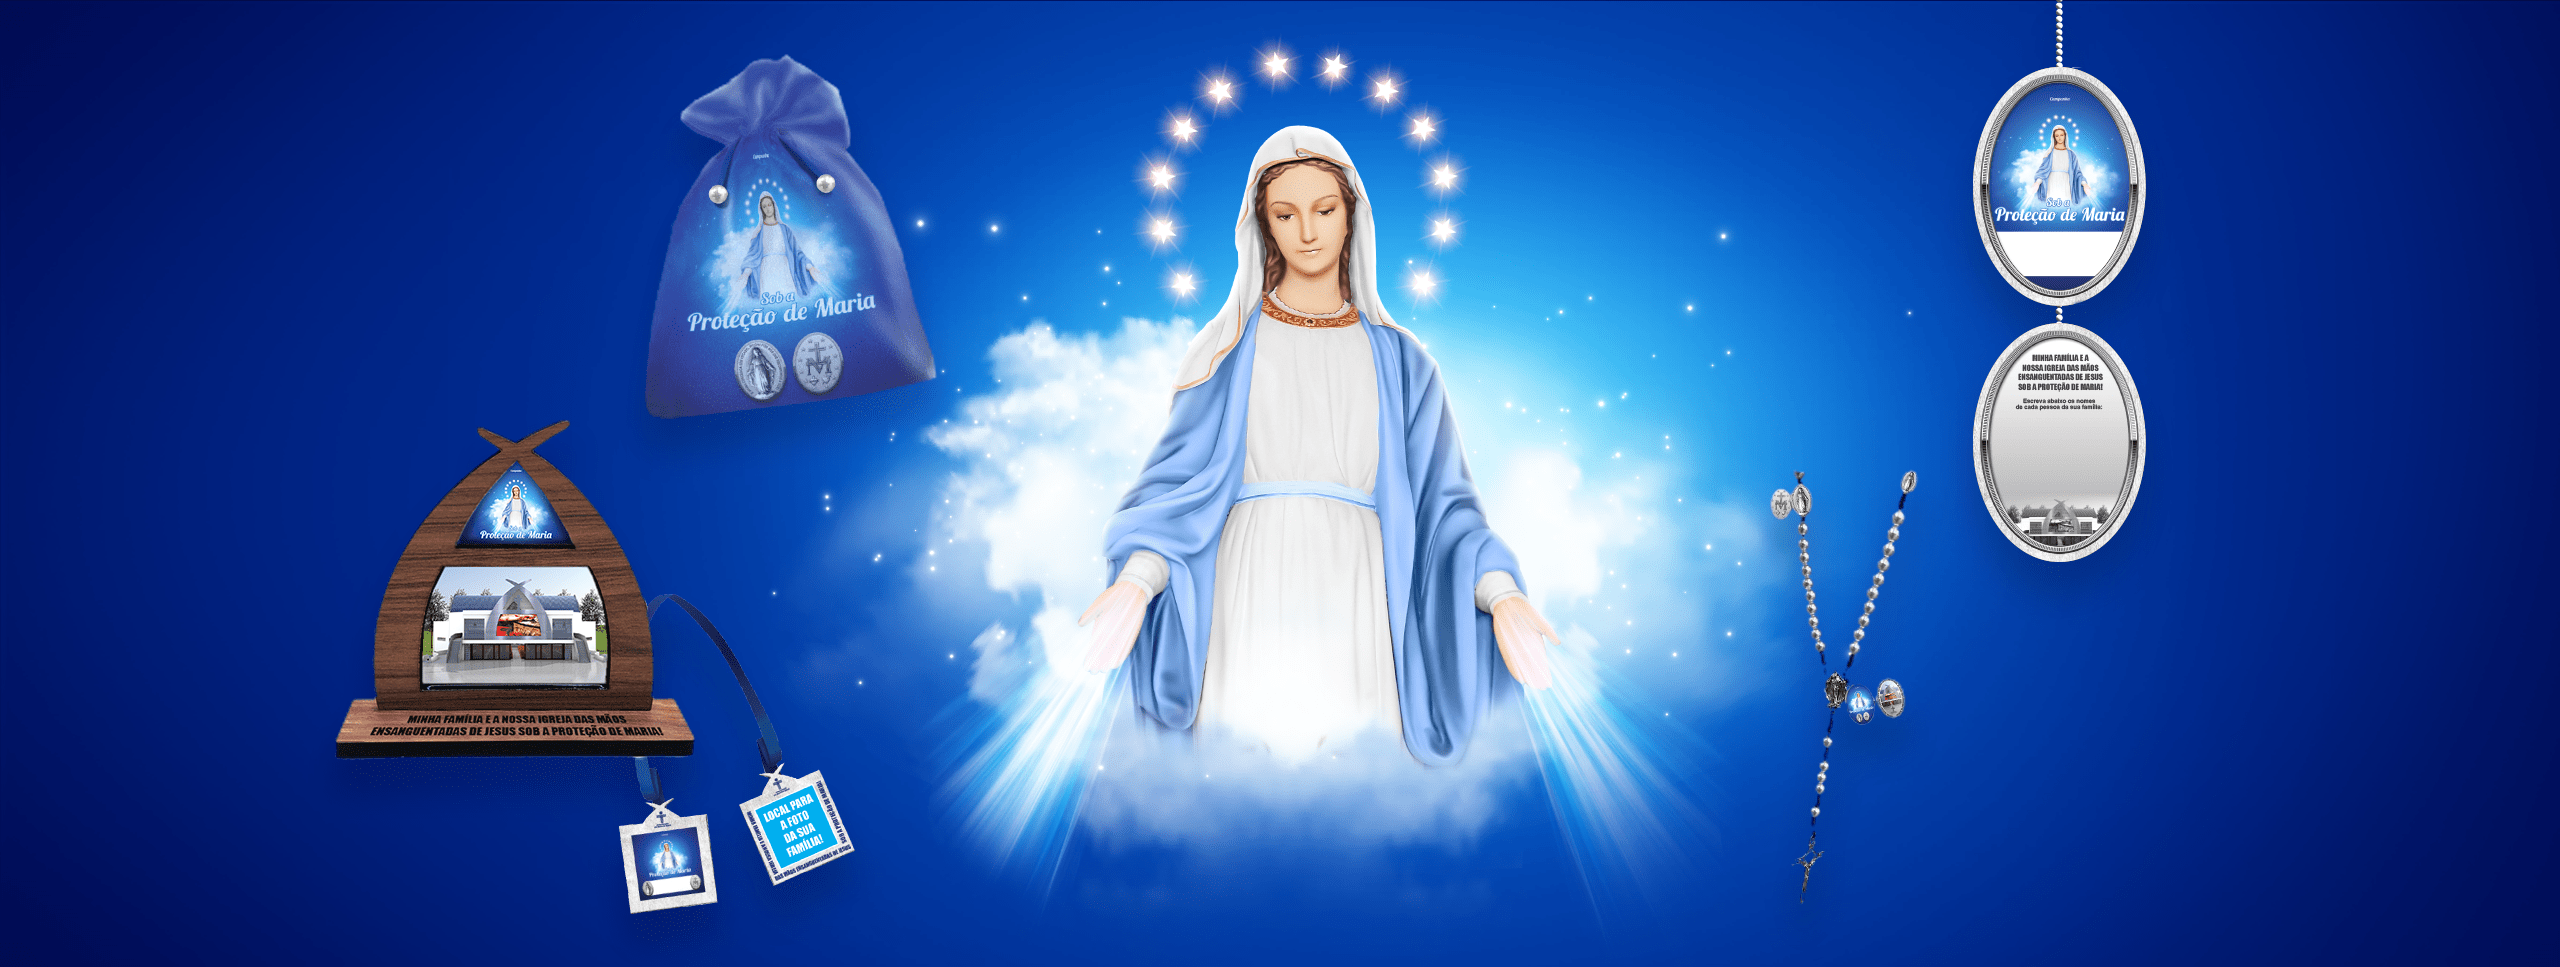 Campanha Sob a Proteção de Maria – Participe